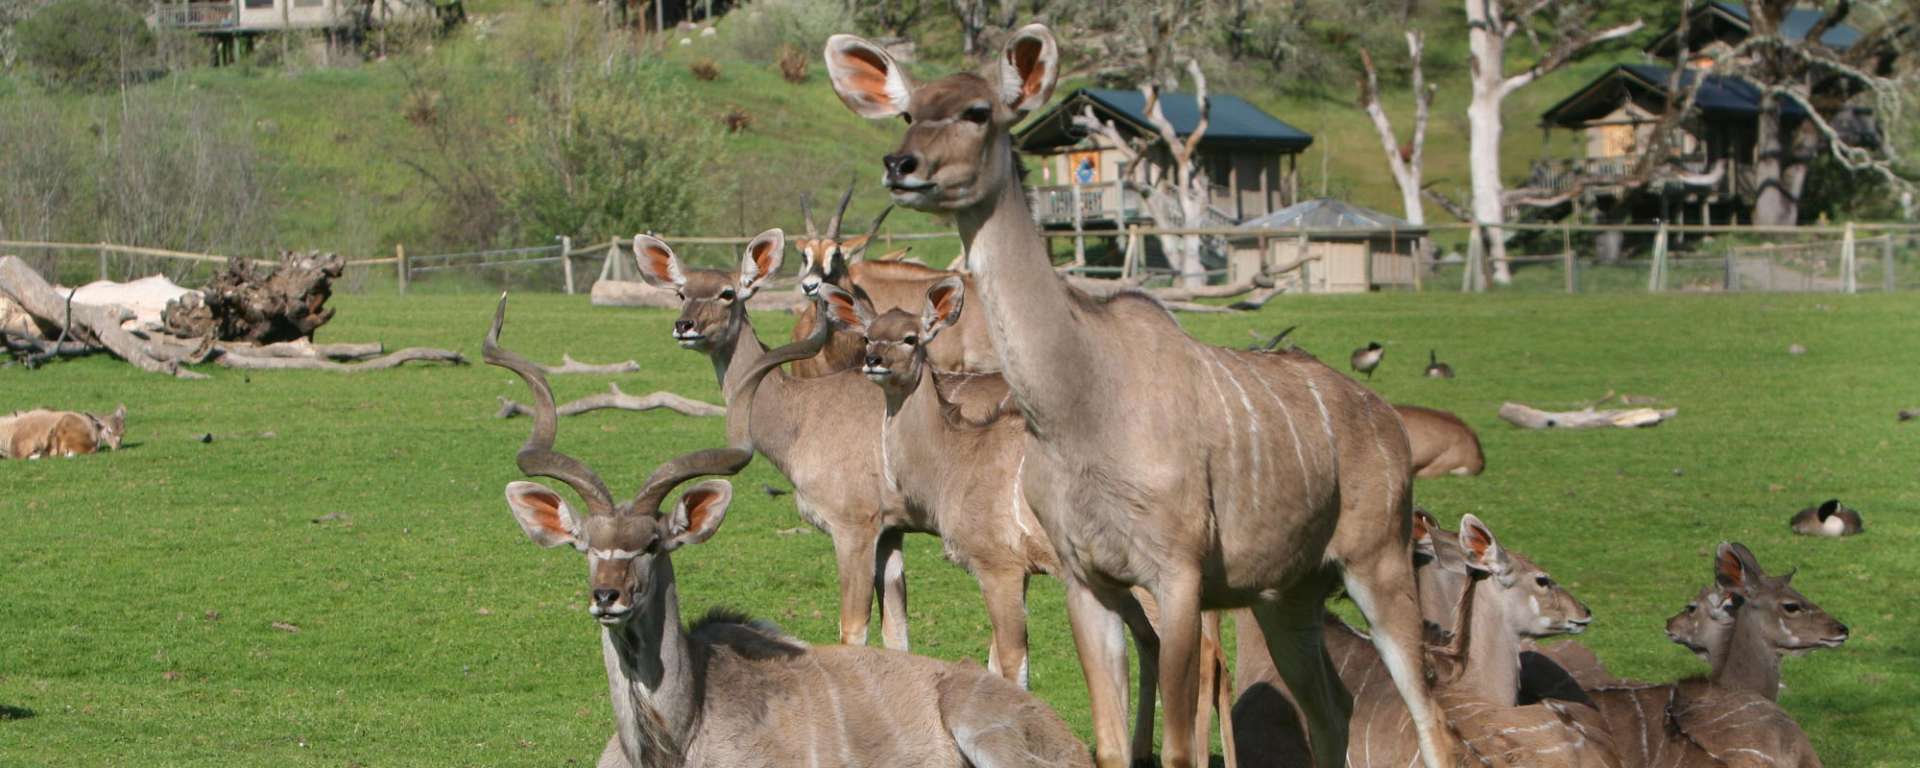 Kudu Group